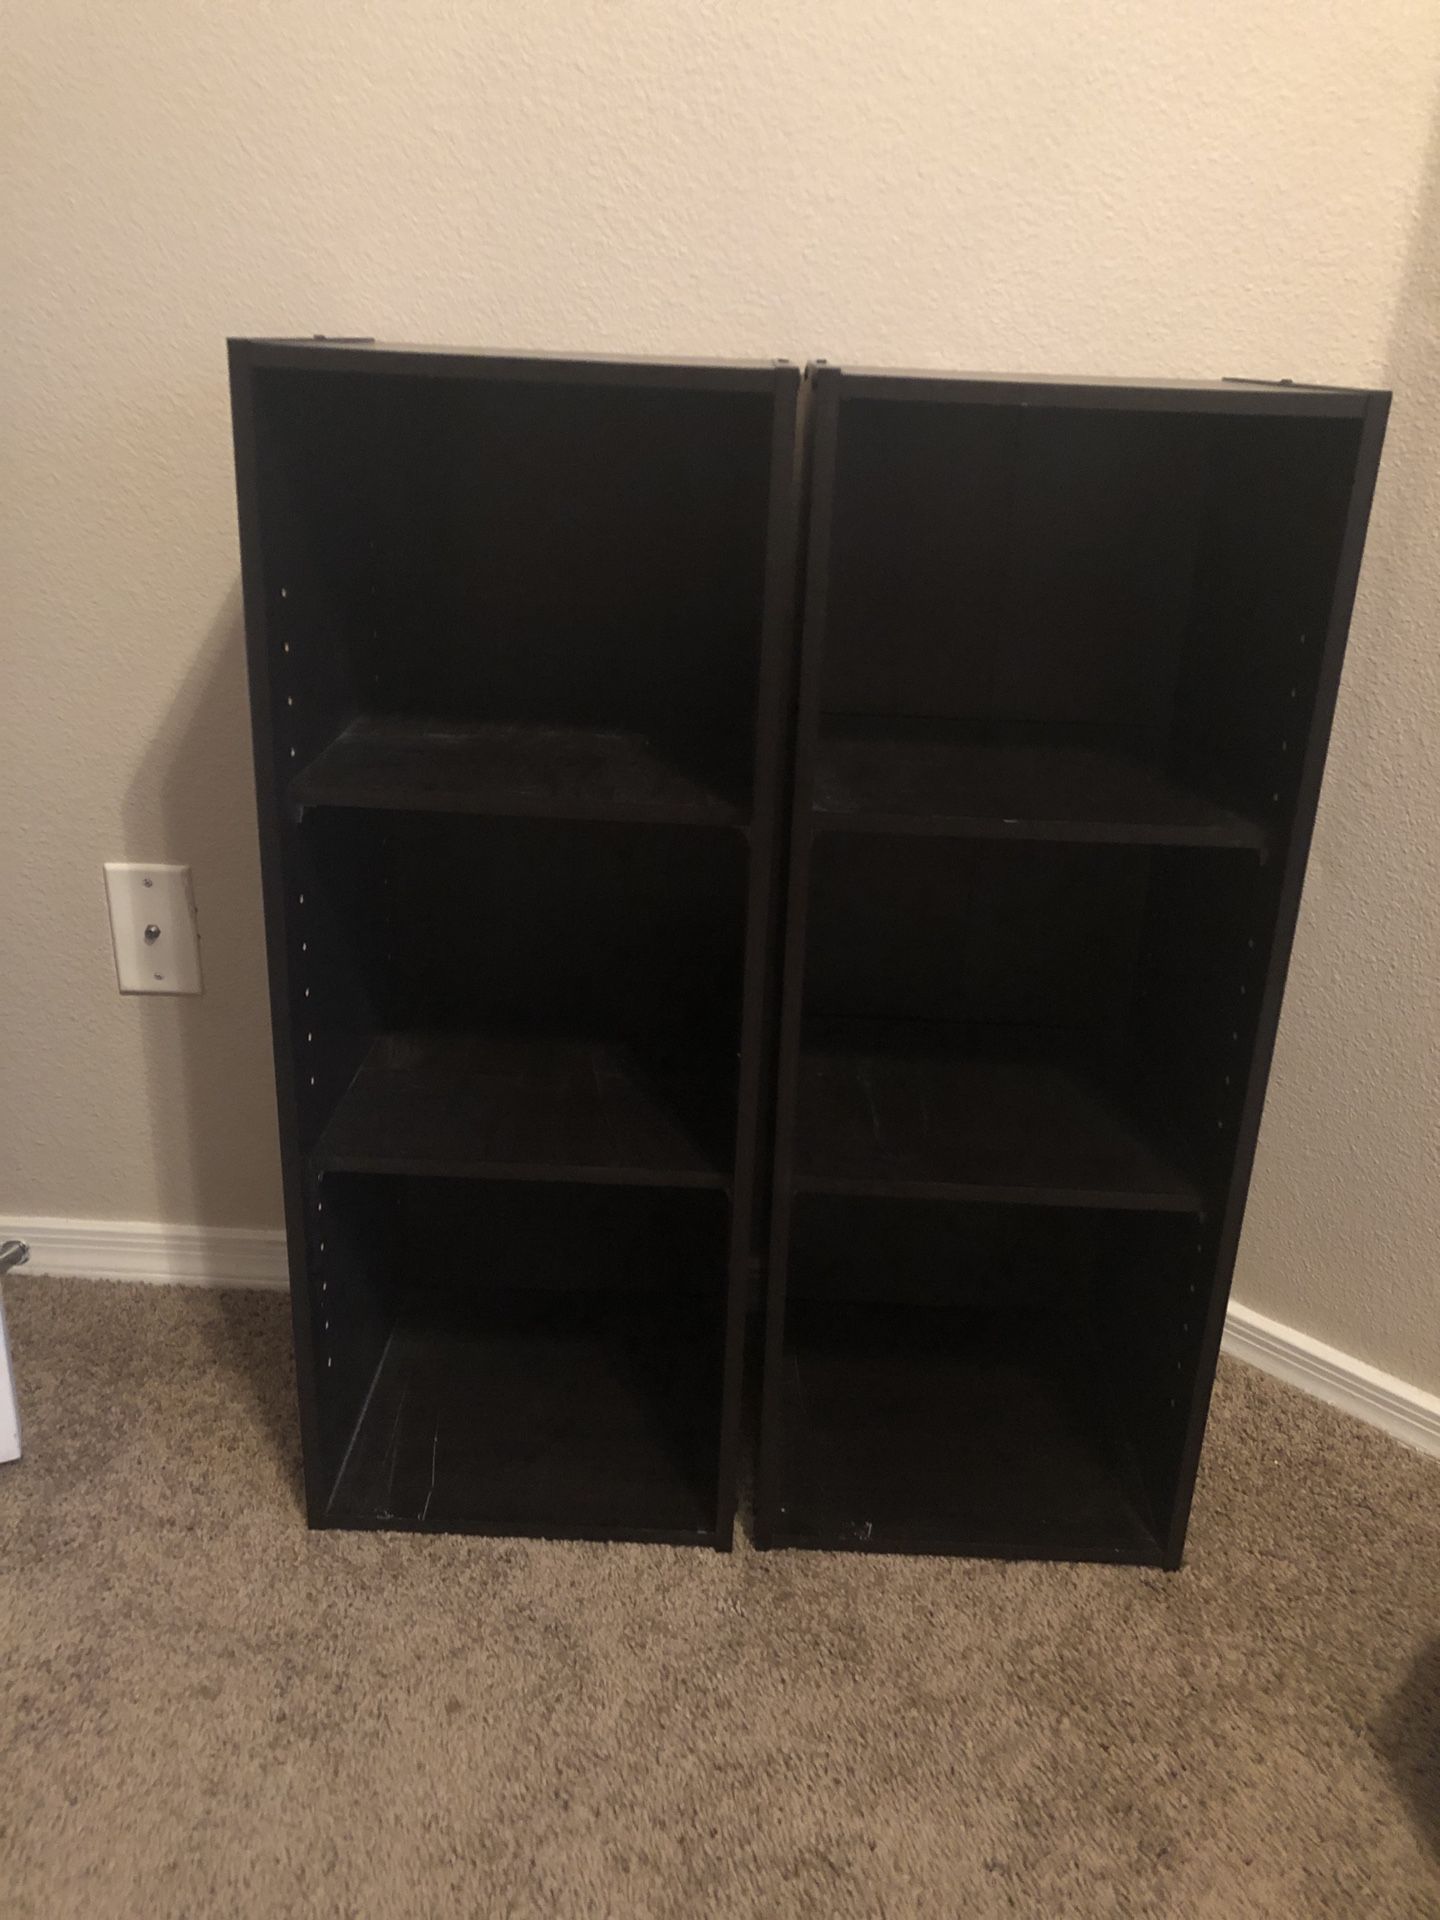 Two black bookshelves